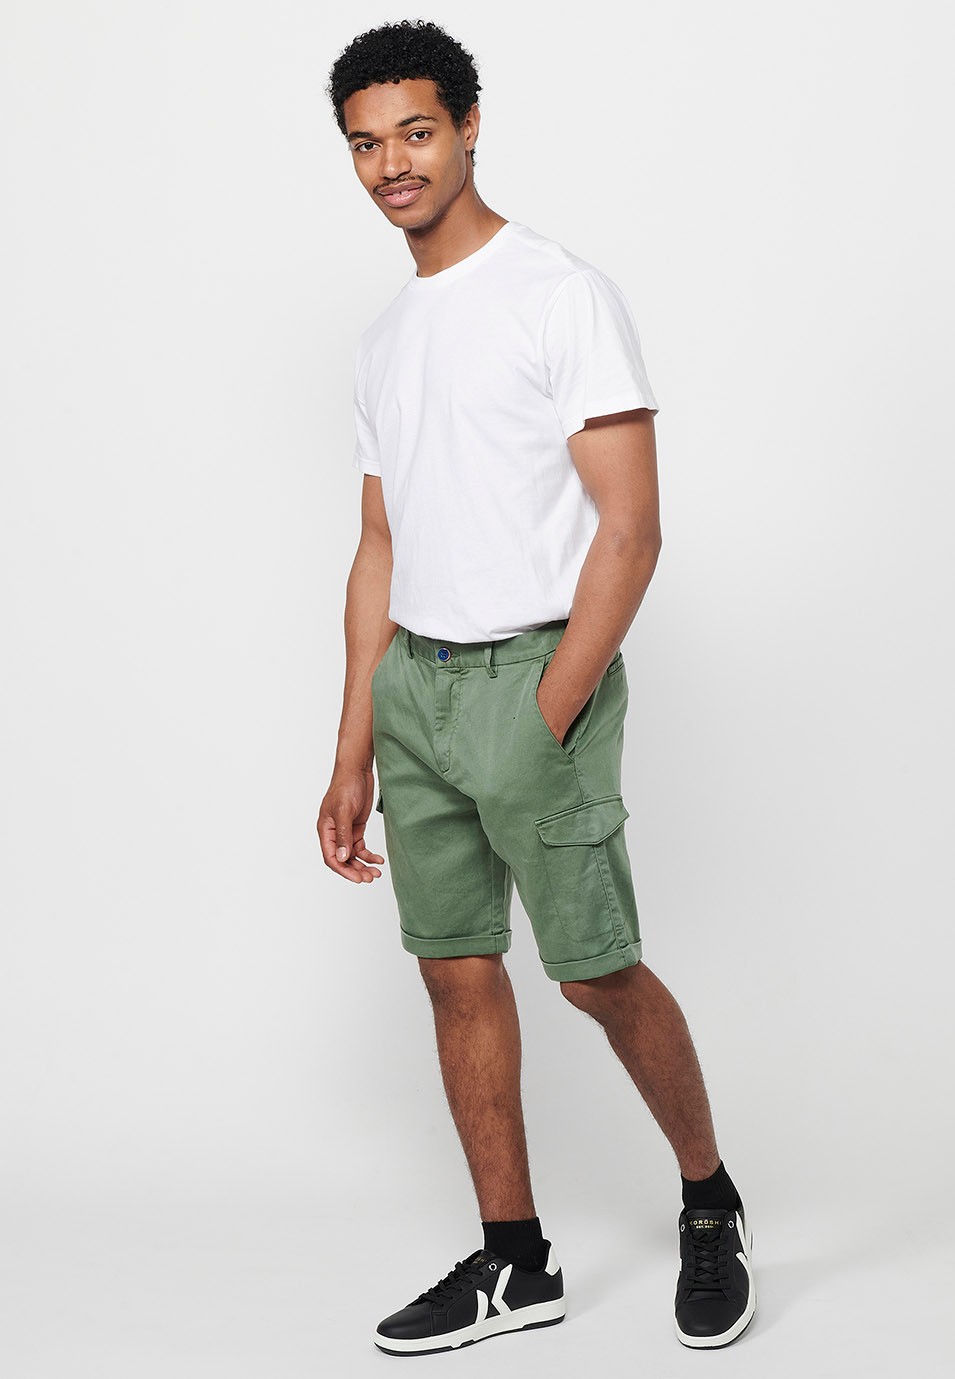 Pantalons curts amb Cintura engomada i tancament amb cremallera i botó amb Butxaques, dos laterals amb solapa de Color Verd per a Home